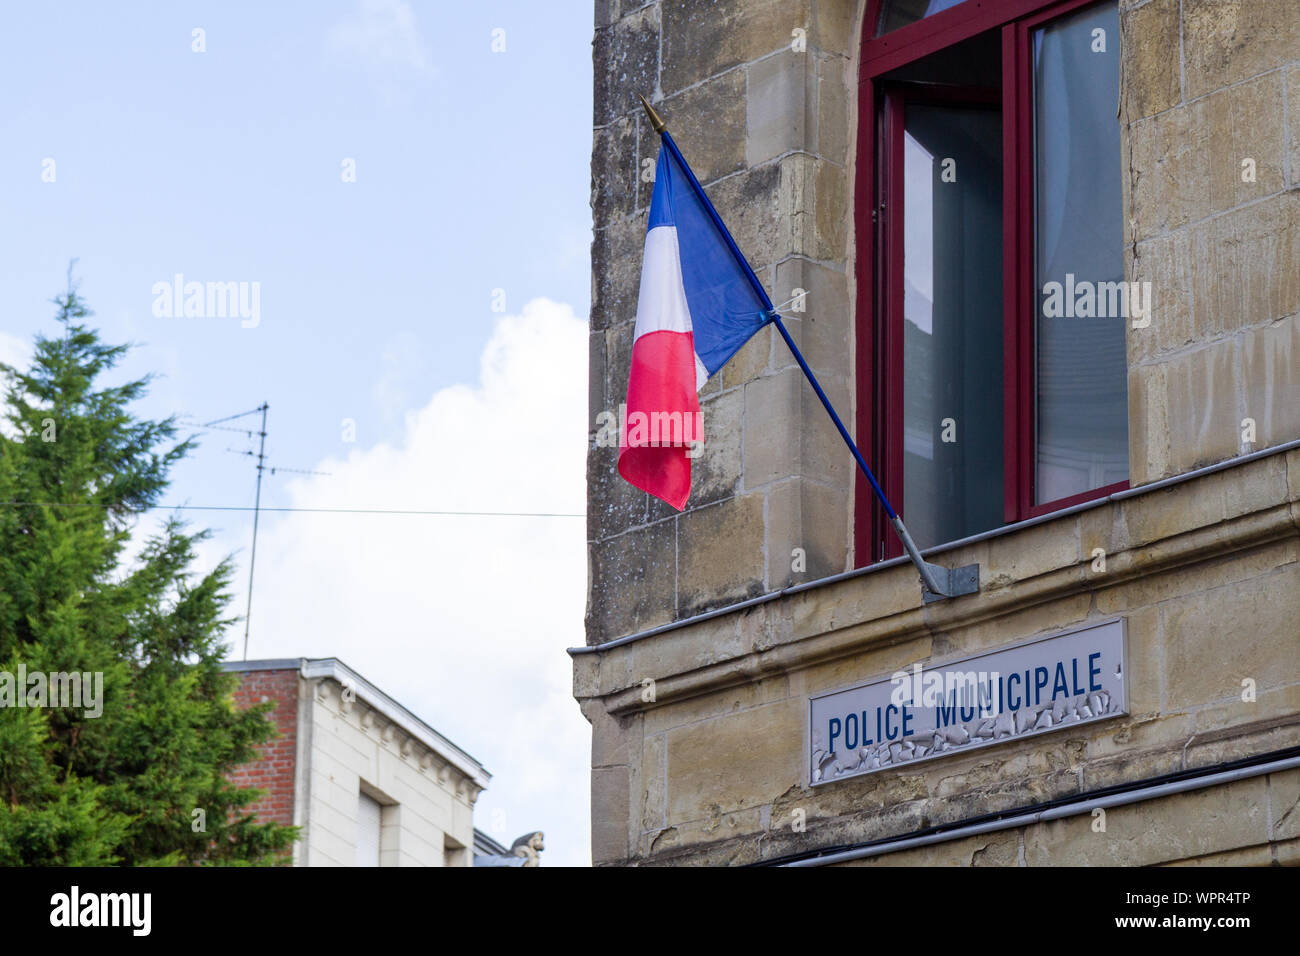 Un drapeau français accroché à la fenêtre de la police municipale de Valenciennes, France. Tourné en 2019. Banque D'Images